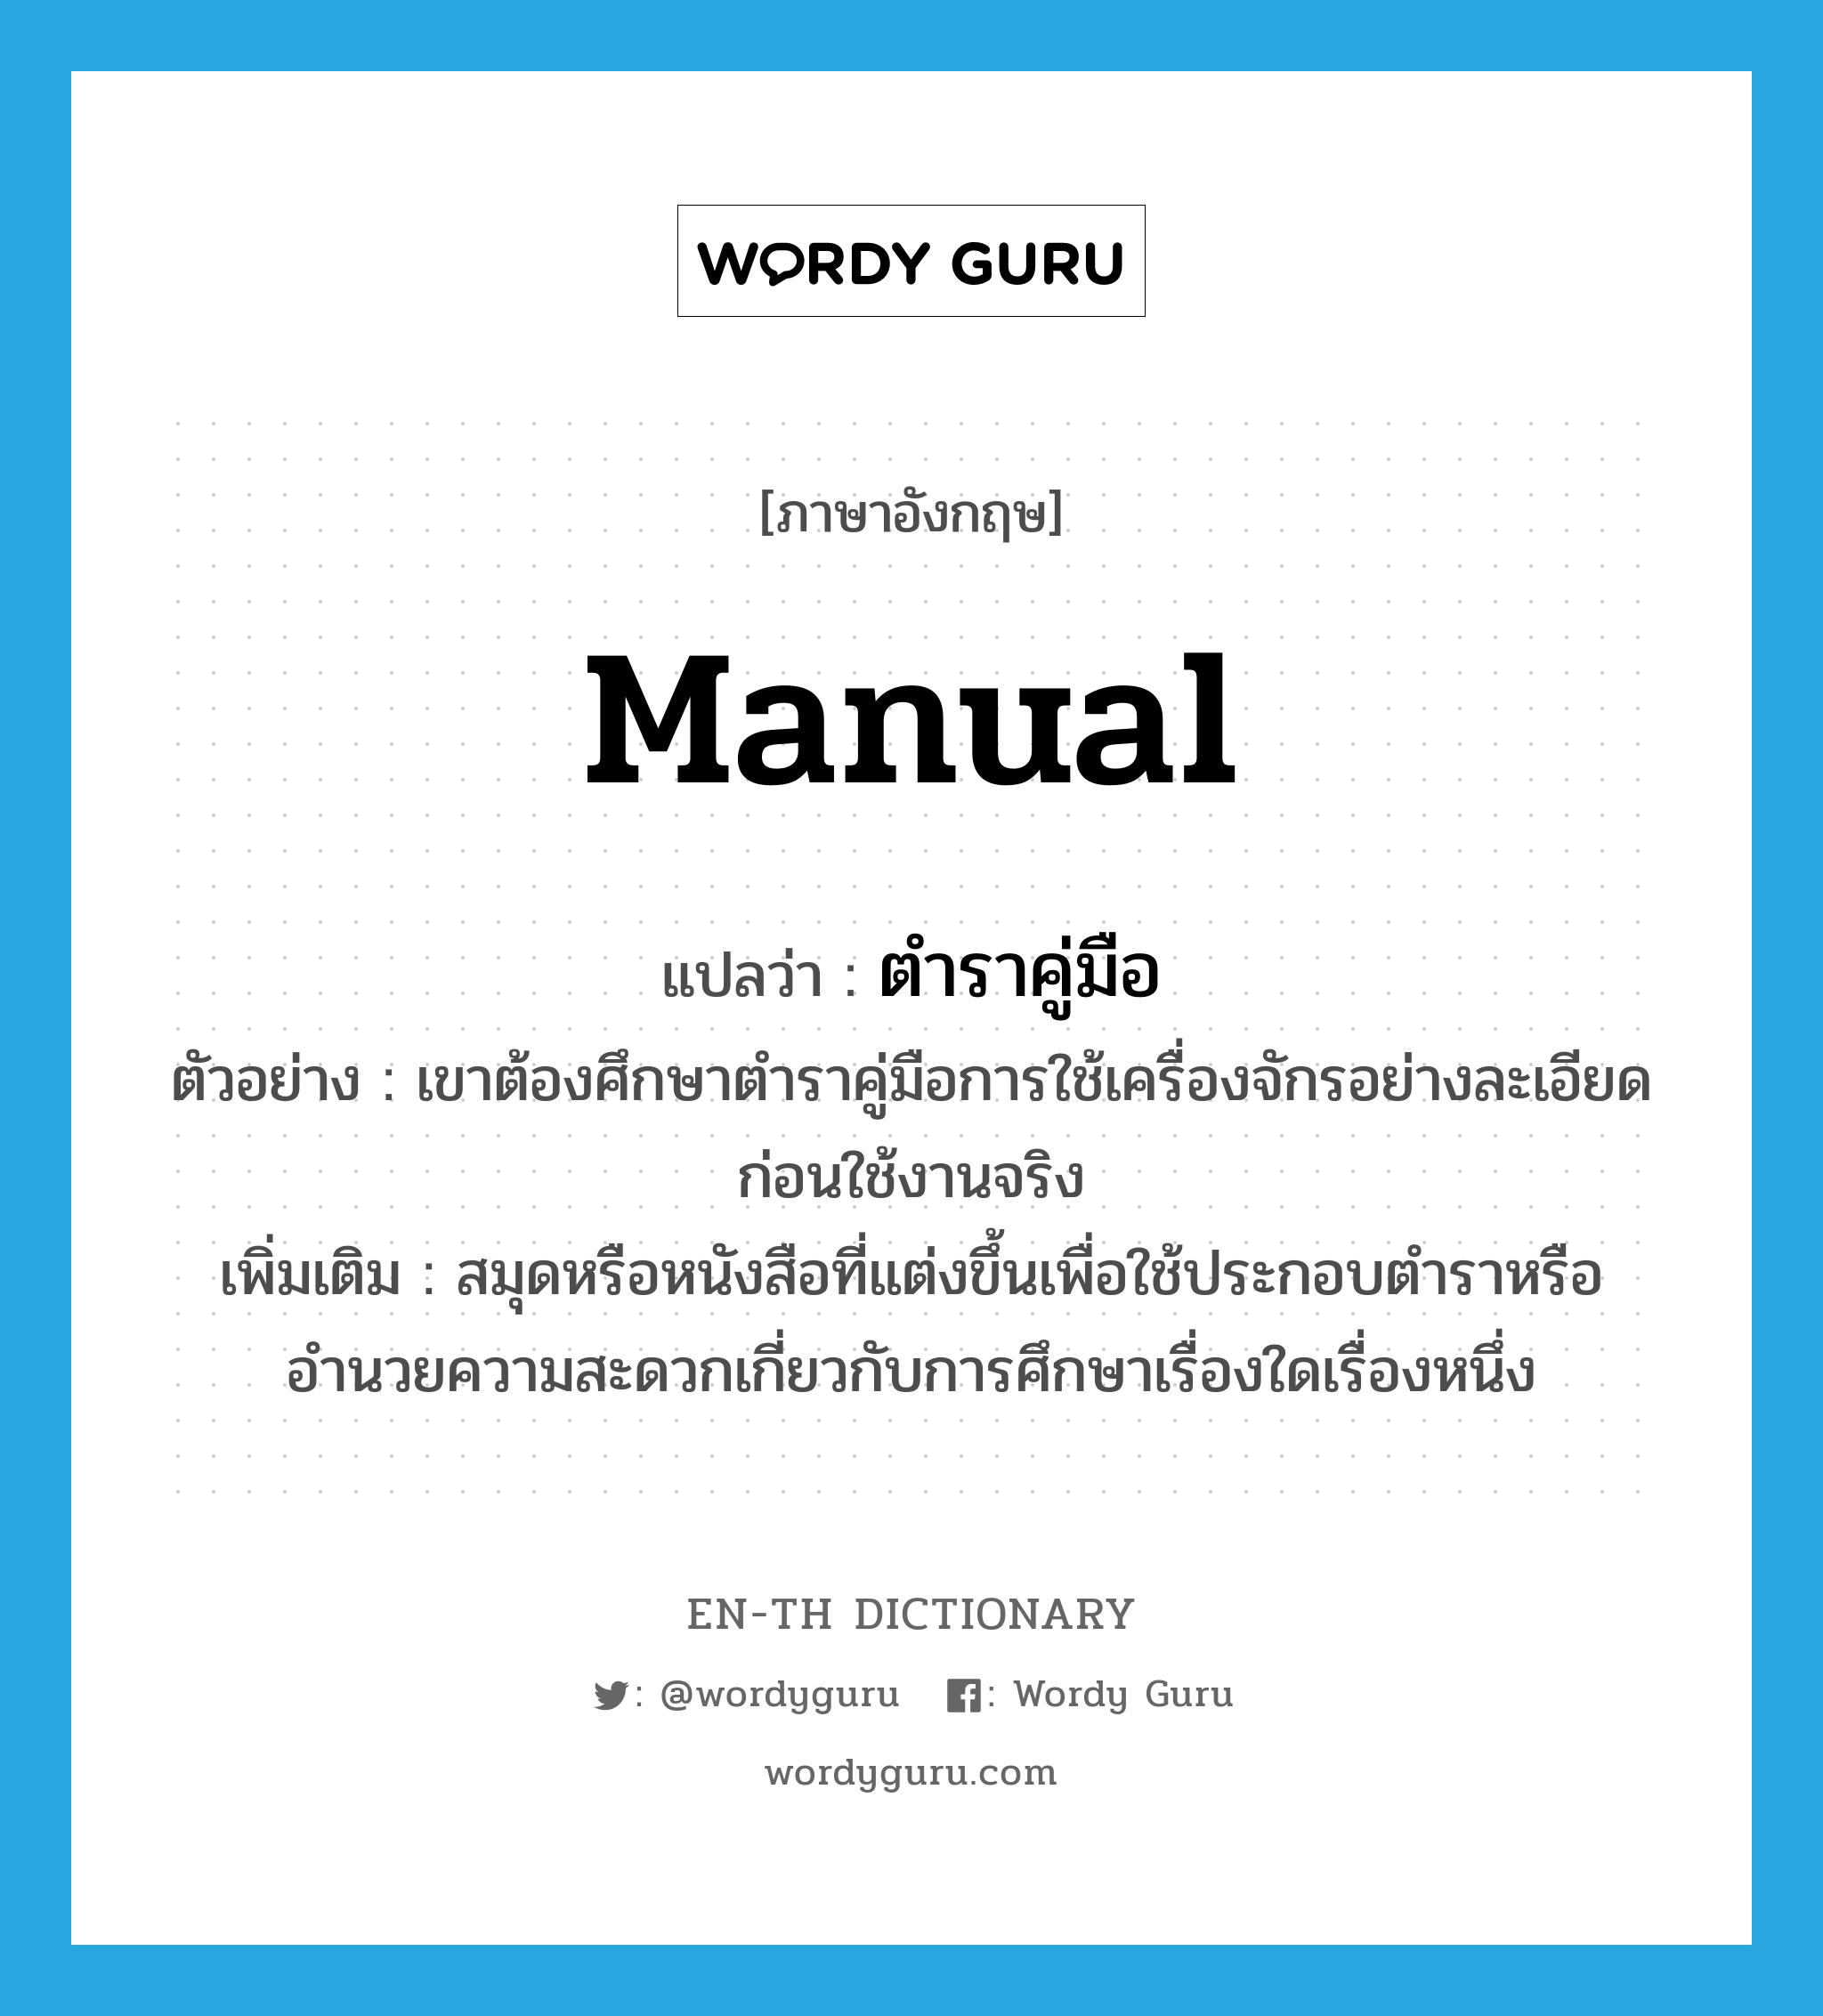 manual แปลว่า?, คำศัพท์ภาษาอังกฤษ manual แปลว่า ตำราคู่มือ ประเภท N ตัวอย่าง เขาต้องศึกษาตำราคู่มือการใช้เครื่องจักรอย่างละเอียด ก่อนใช้งานจริง เพิ่มเติม สมุดหรือหนังสือที่แต่งขึ้นเพื่อใช้ประกอบตำราหรืออำนวยความสะดวกเกี่ยวกับการศึกษาเรื่องใดเรื่องหนึ่ง หมวด N